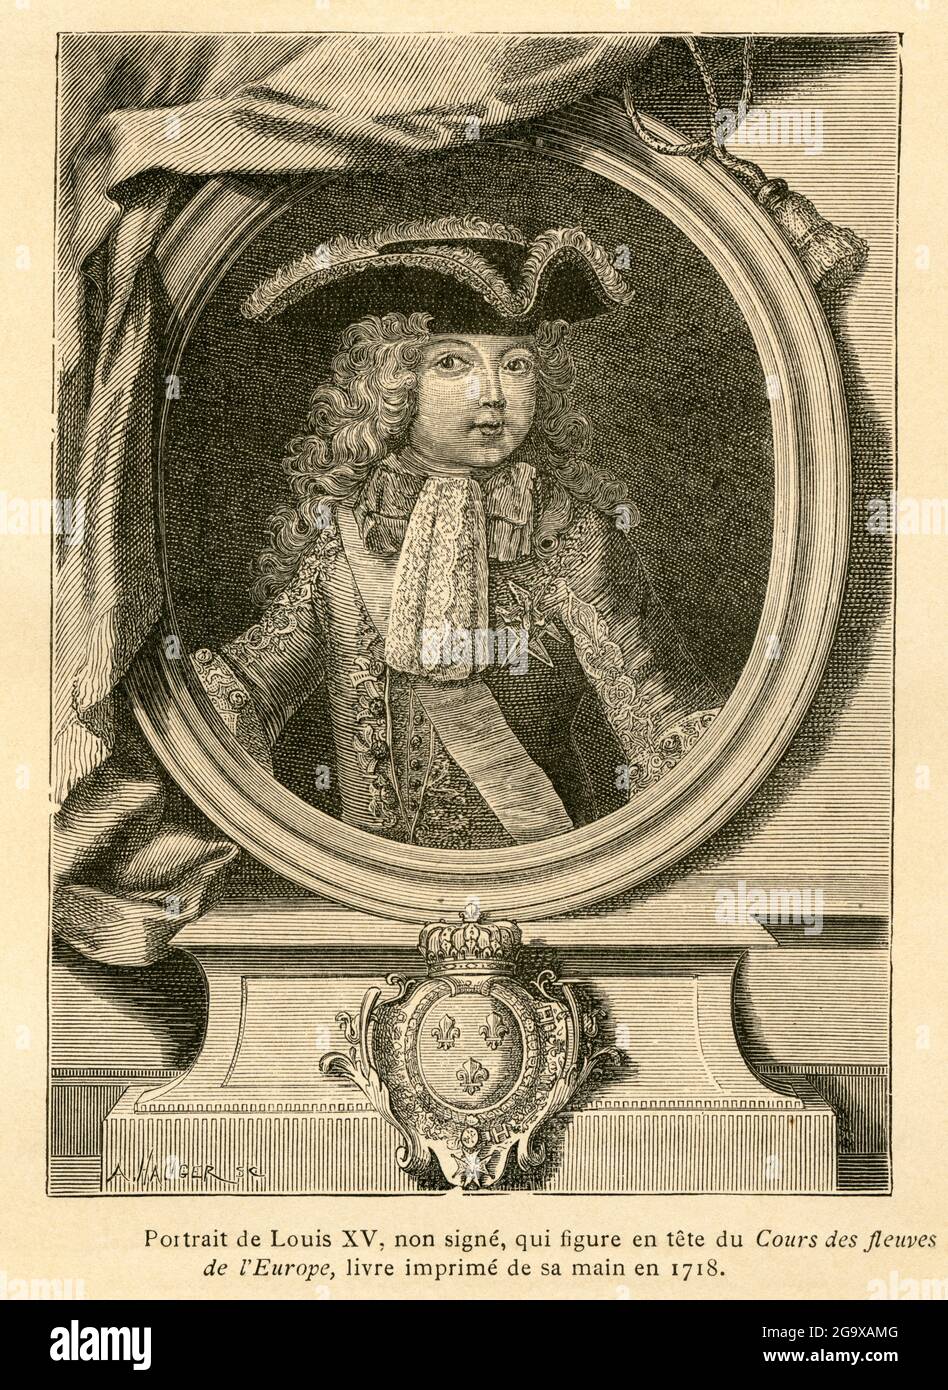 Louis XV de France, portrait, image de: 'L'ancienne France, le Livre', par M. P. Louisy, LE DROIT D'AUTEUR DE L'ARTISTE N'A PAS À ÊTRE EFFACÉ Banque D'Images